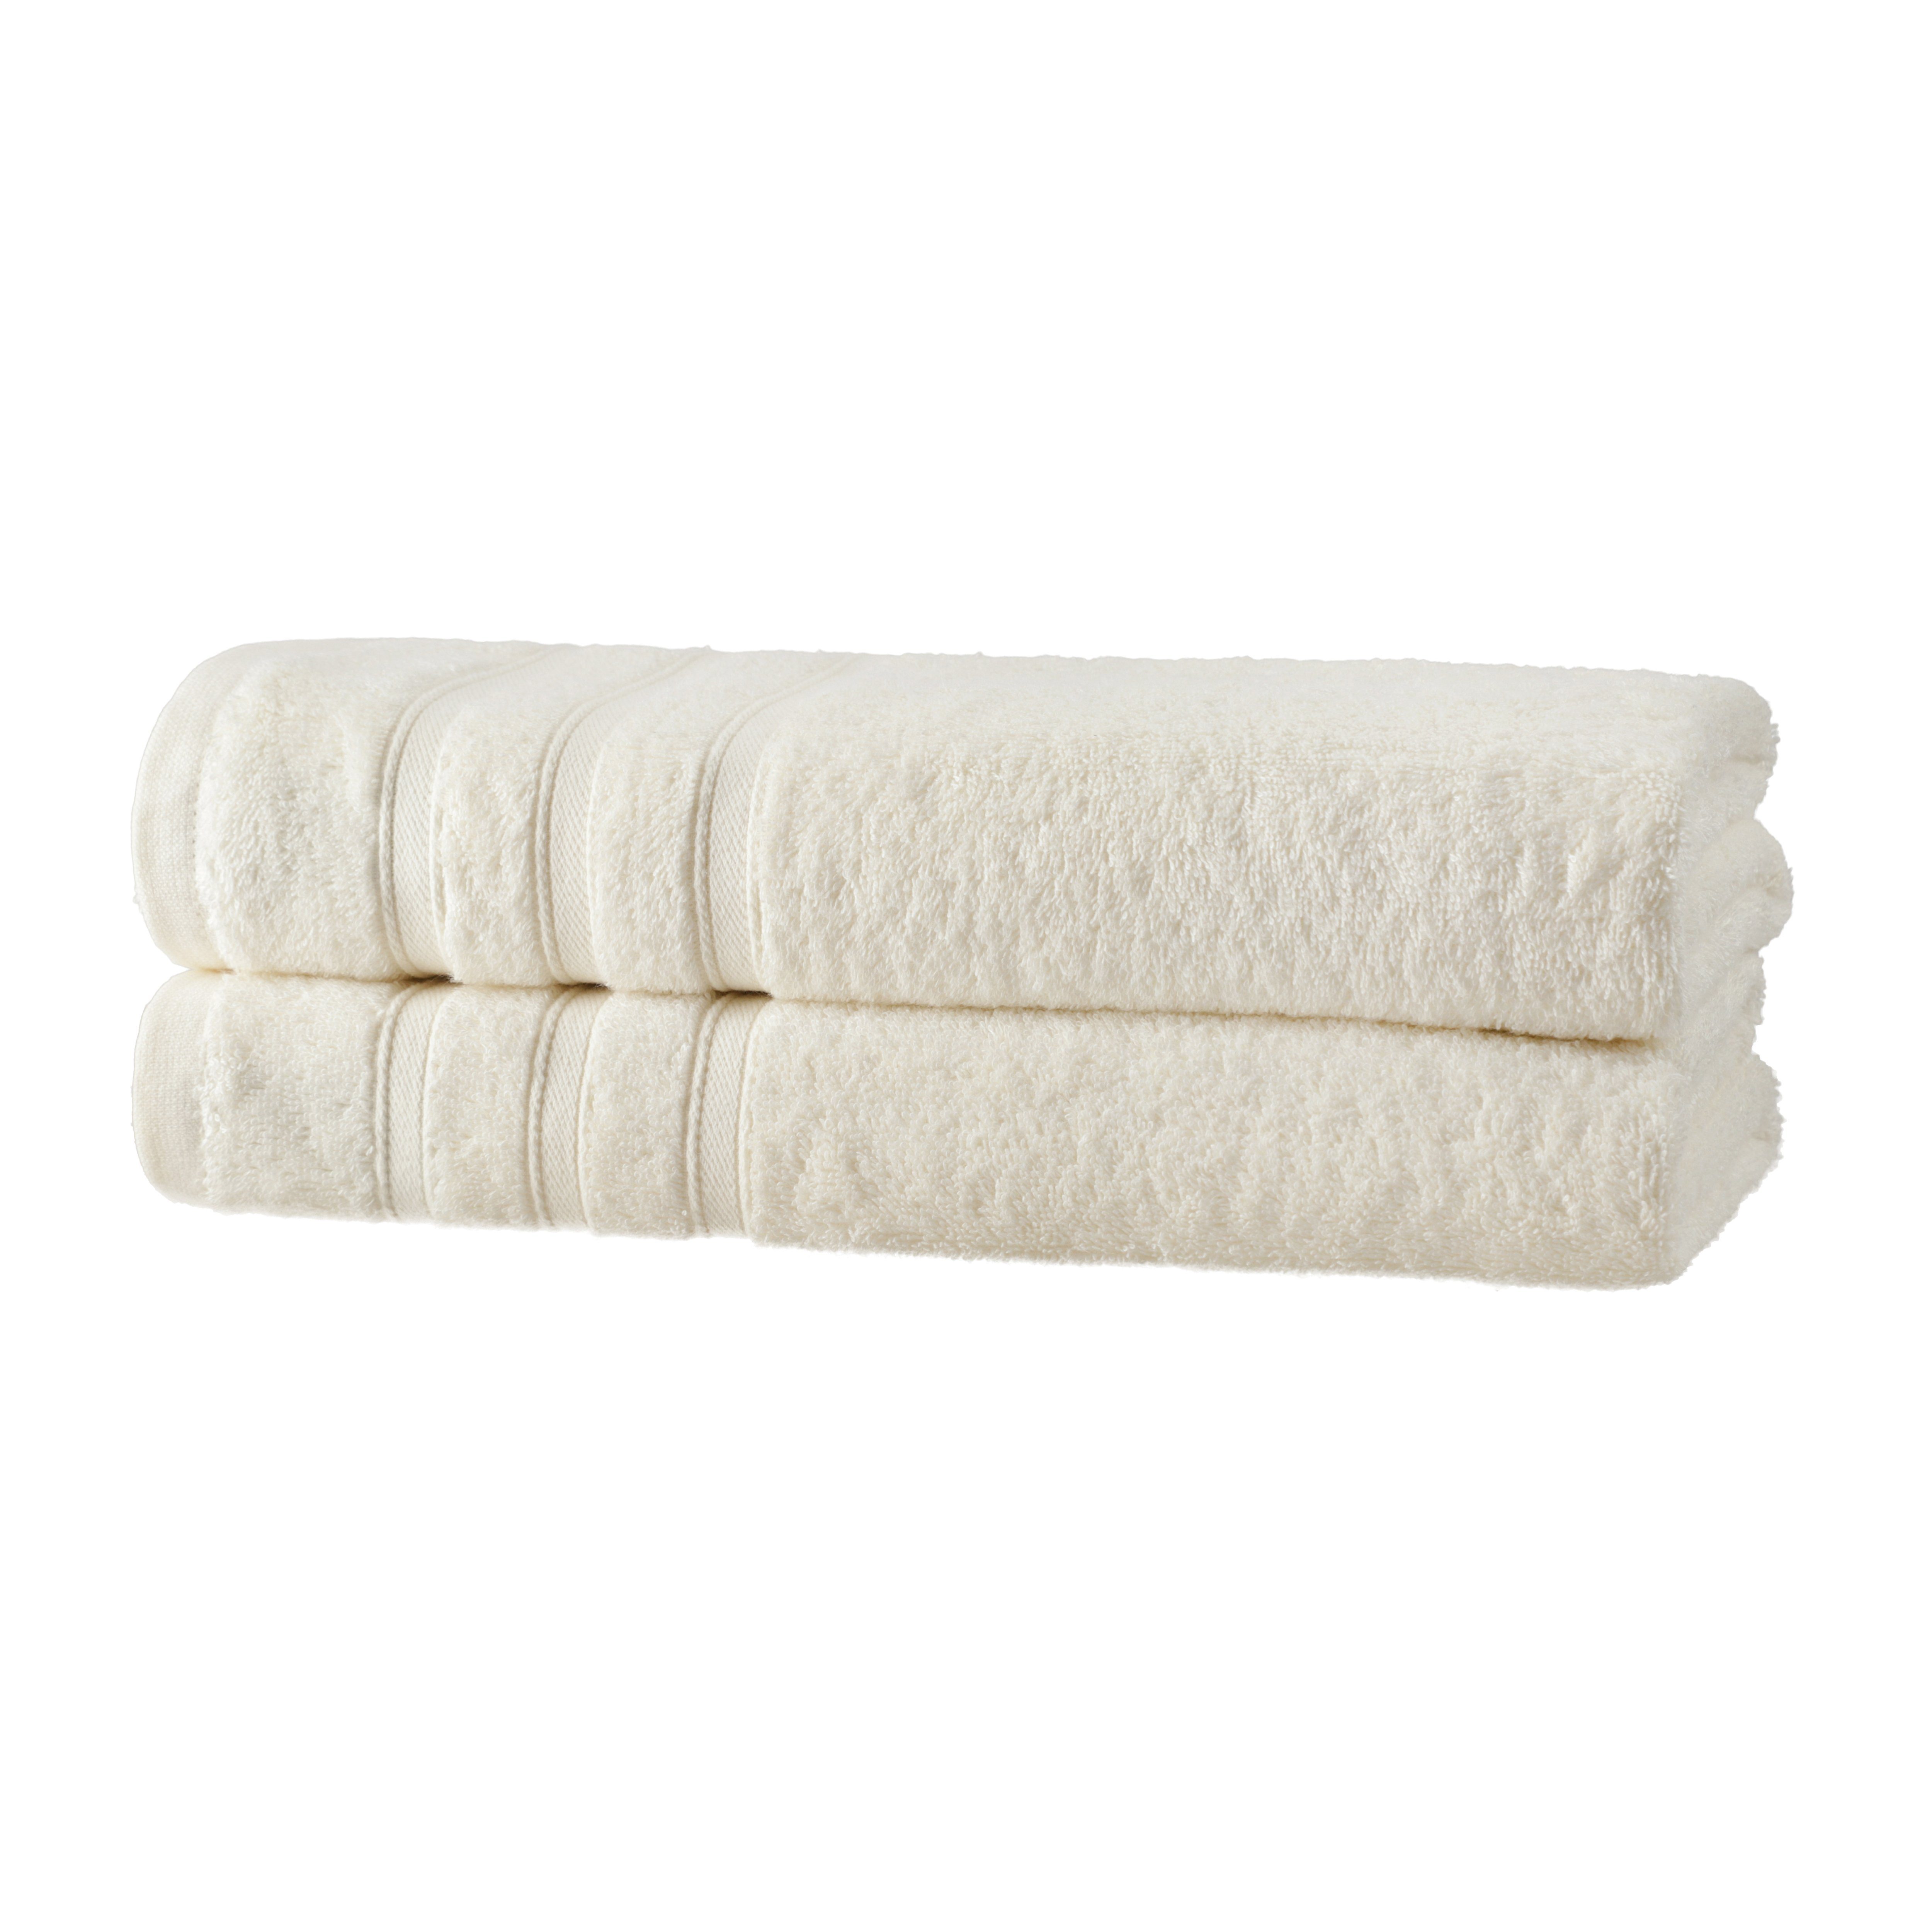 Hometex Premium Textiles Handtuch in nachhaltiger Premium Qualität 450 g/m², 2er Duschtücher, Kuschelig weich und sehr saugfähig, Extra flauschige Hotel-Qualität